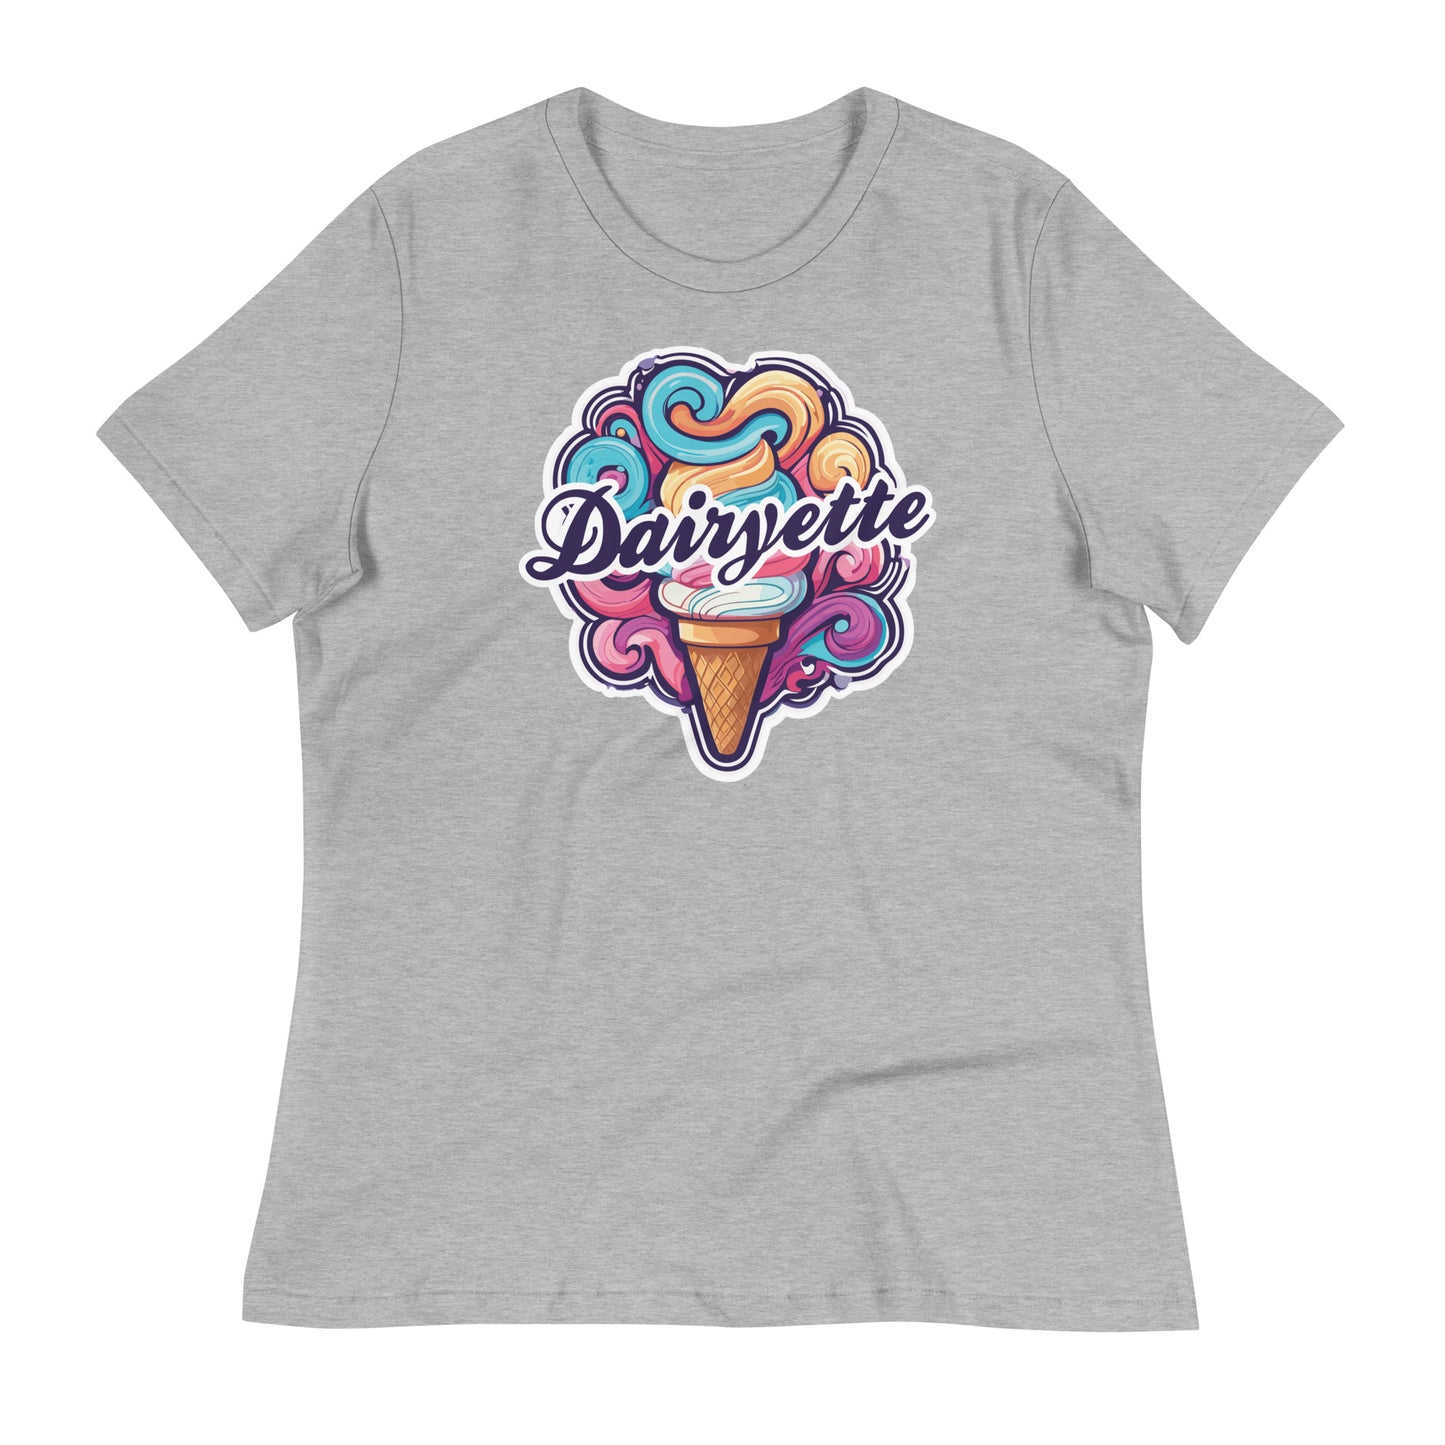 Women's Dairyette Relaxed T-Shirt